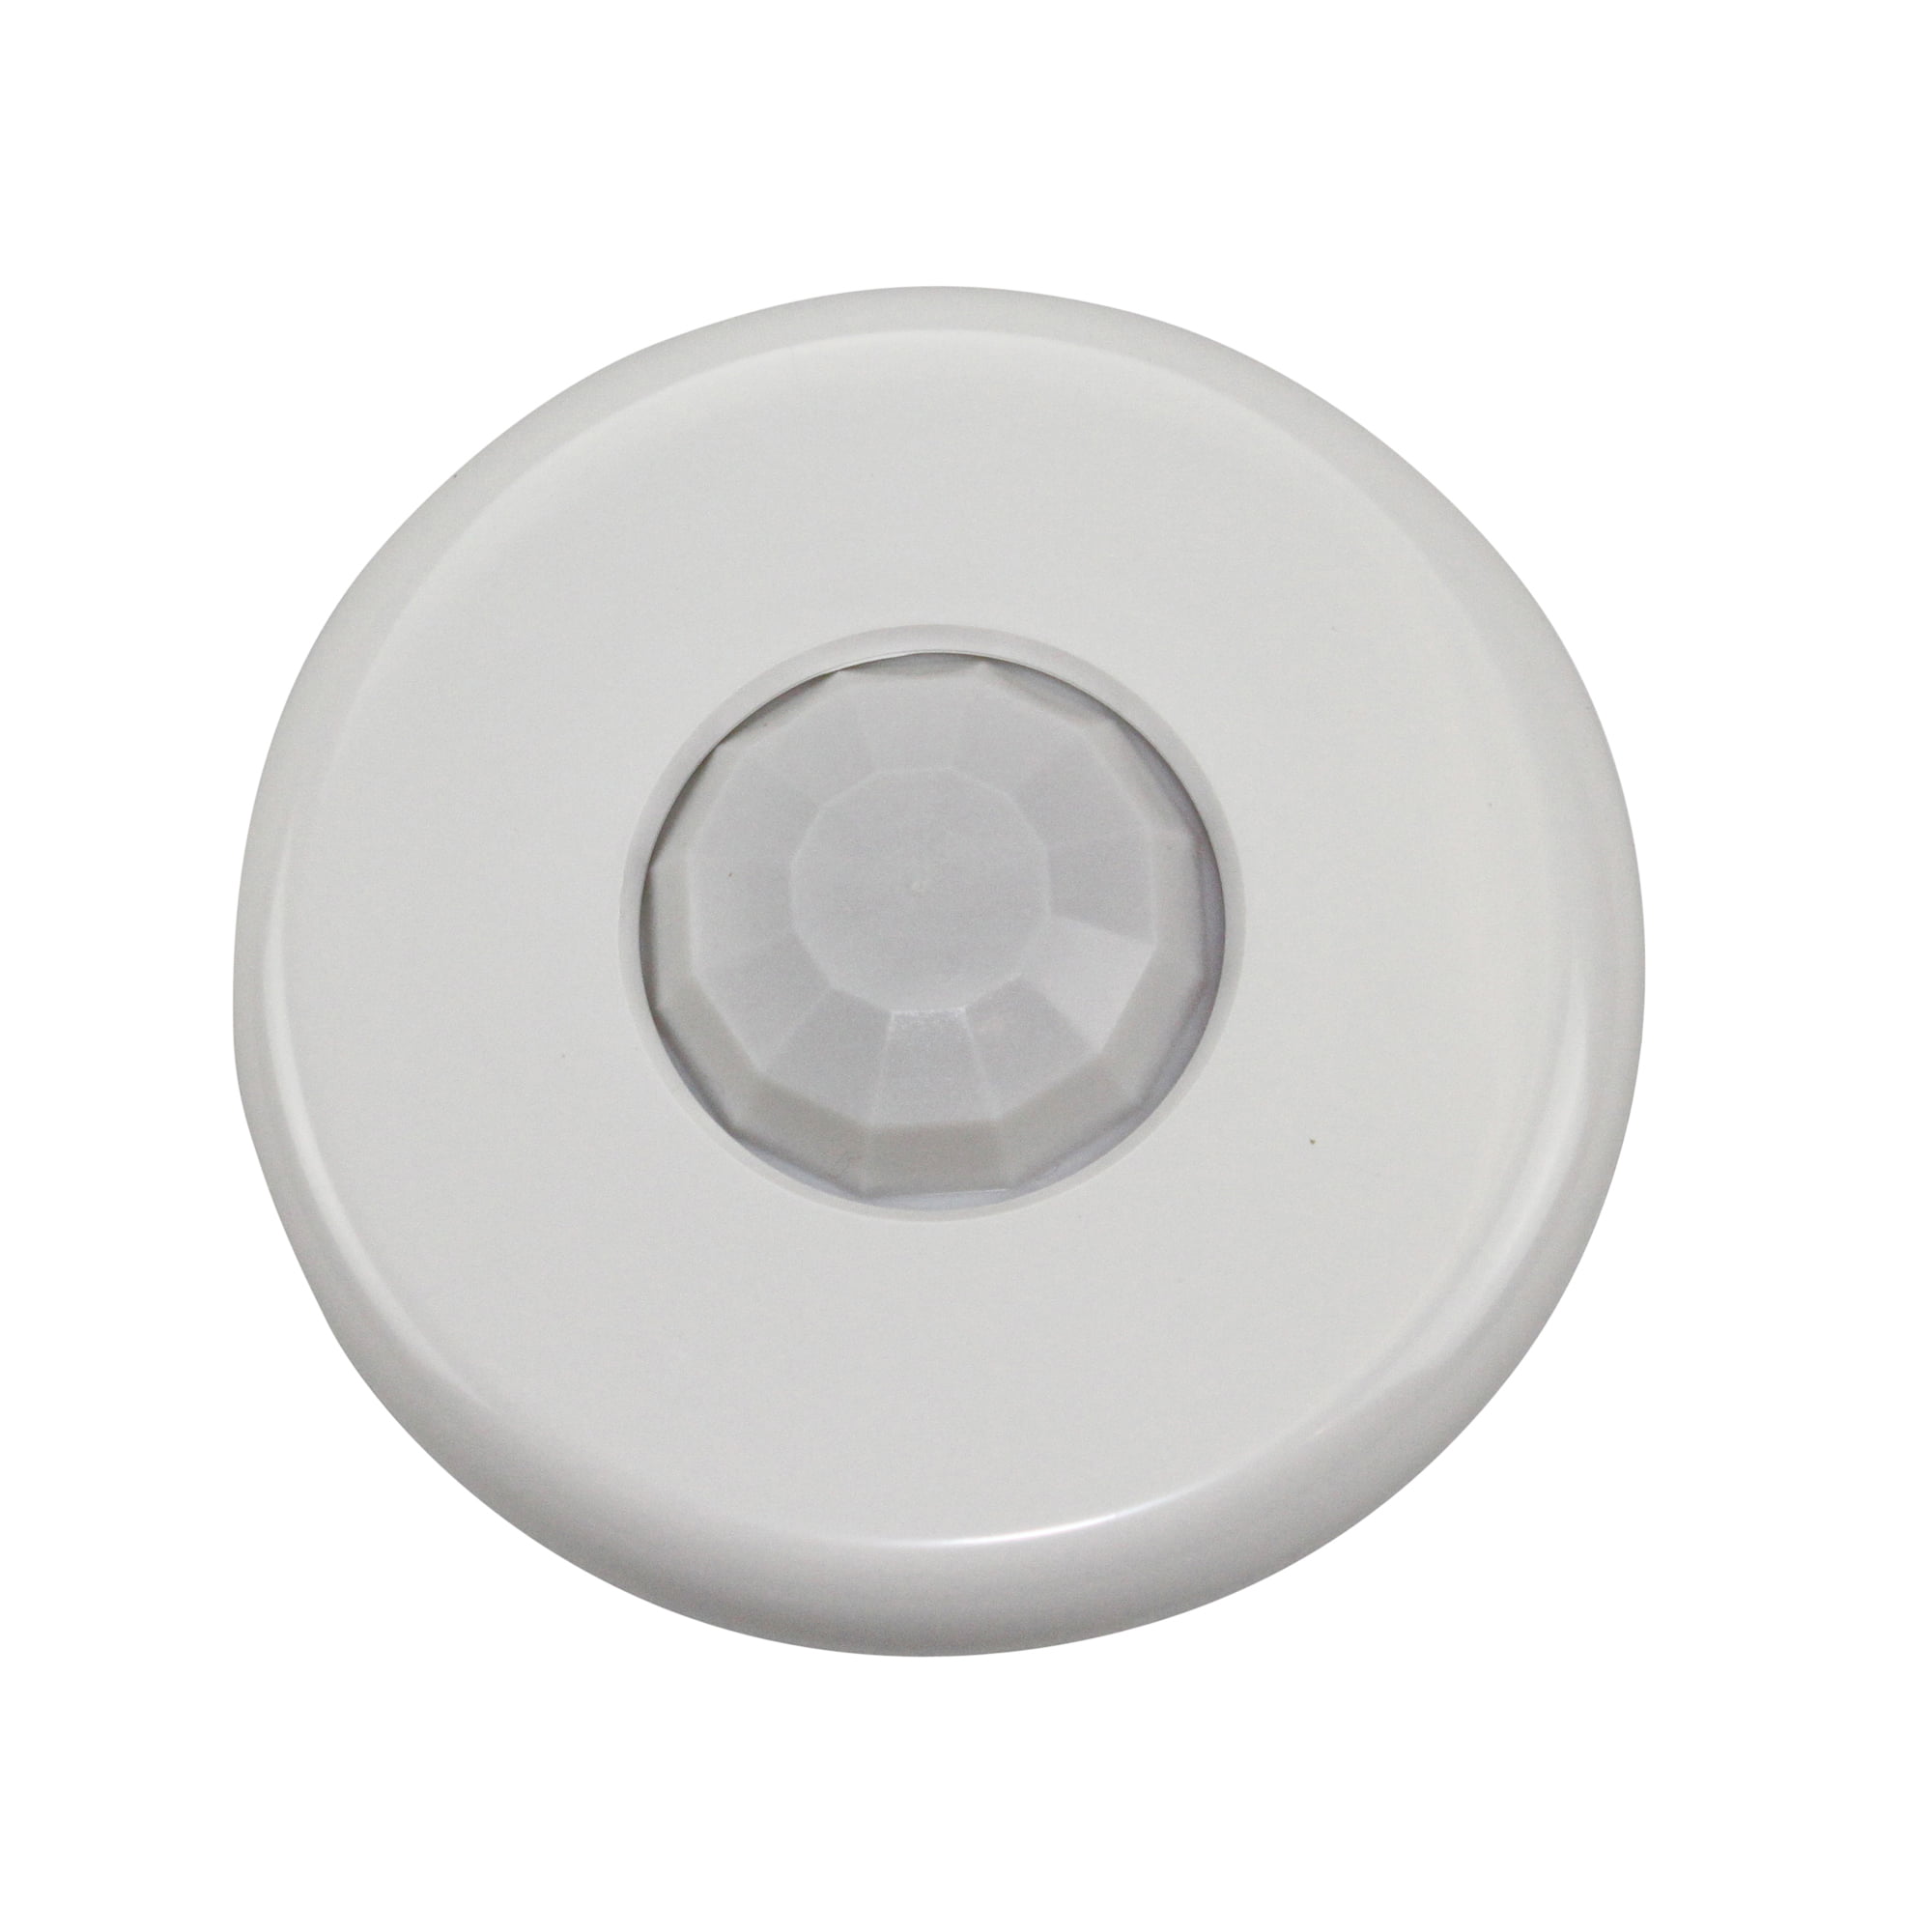 White for sale online Wattstopper CI-205 Ceiling Motion Sensor 